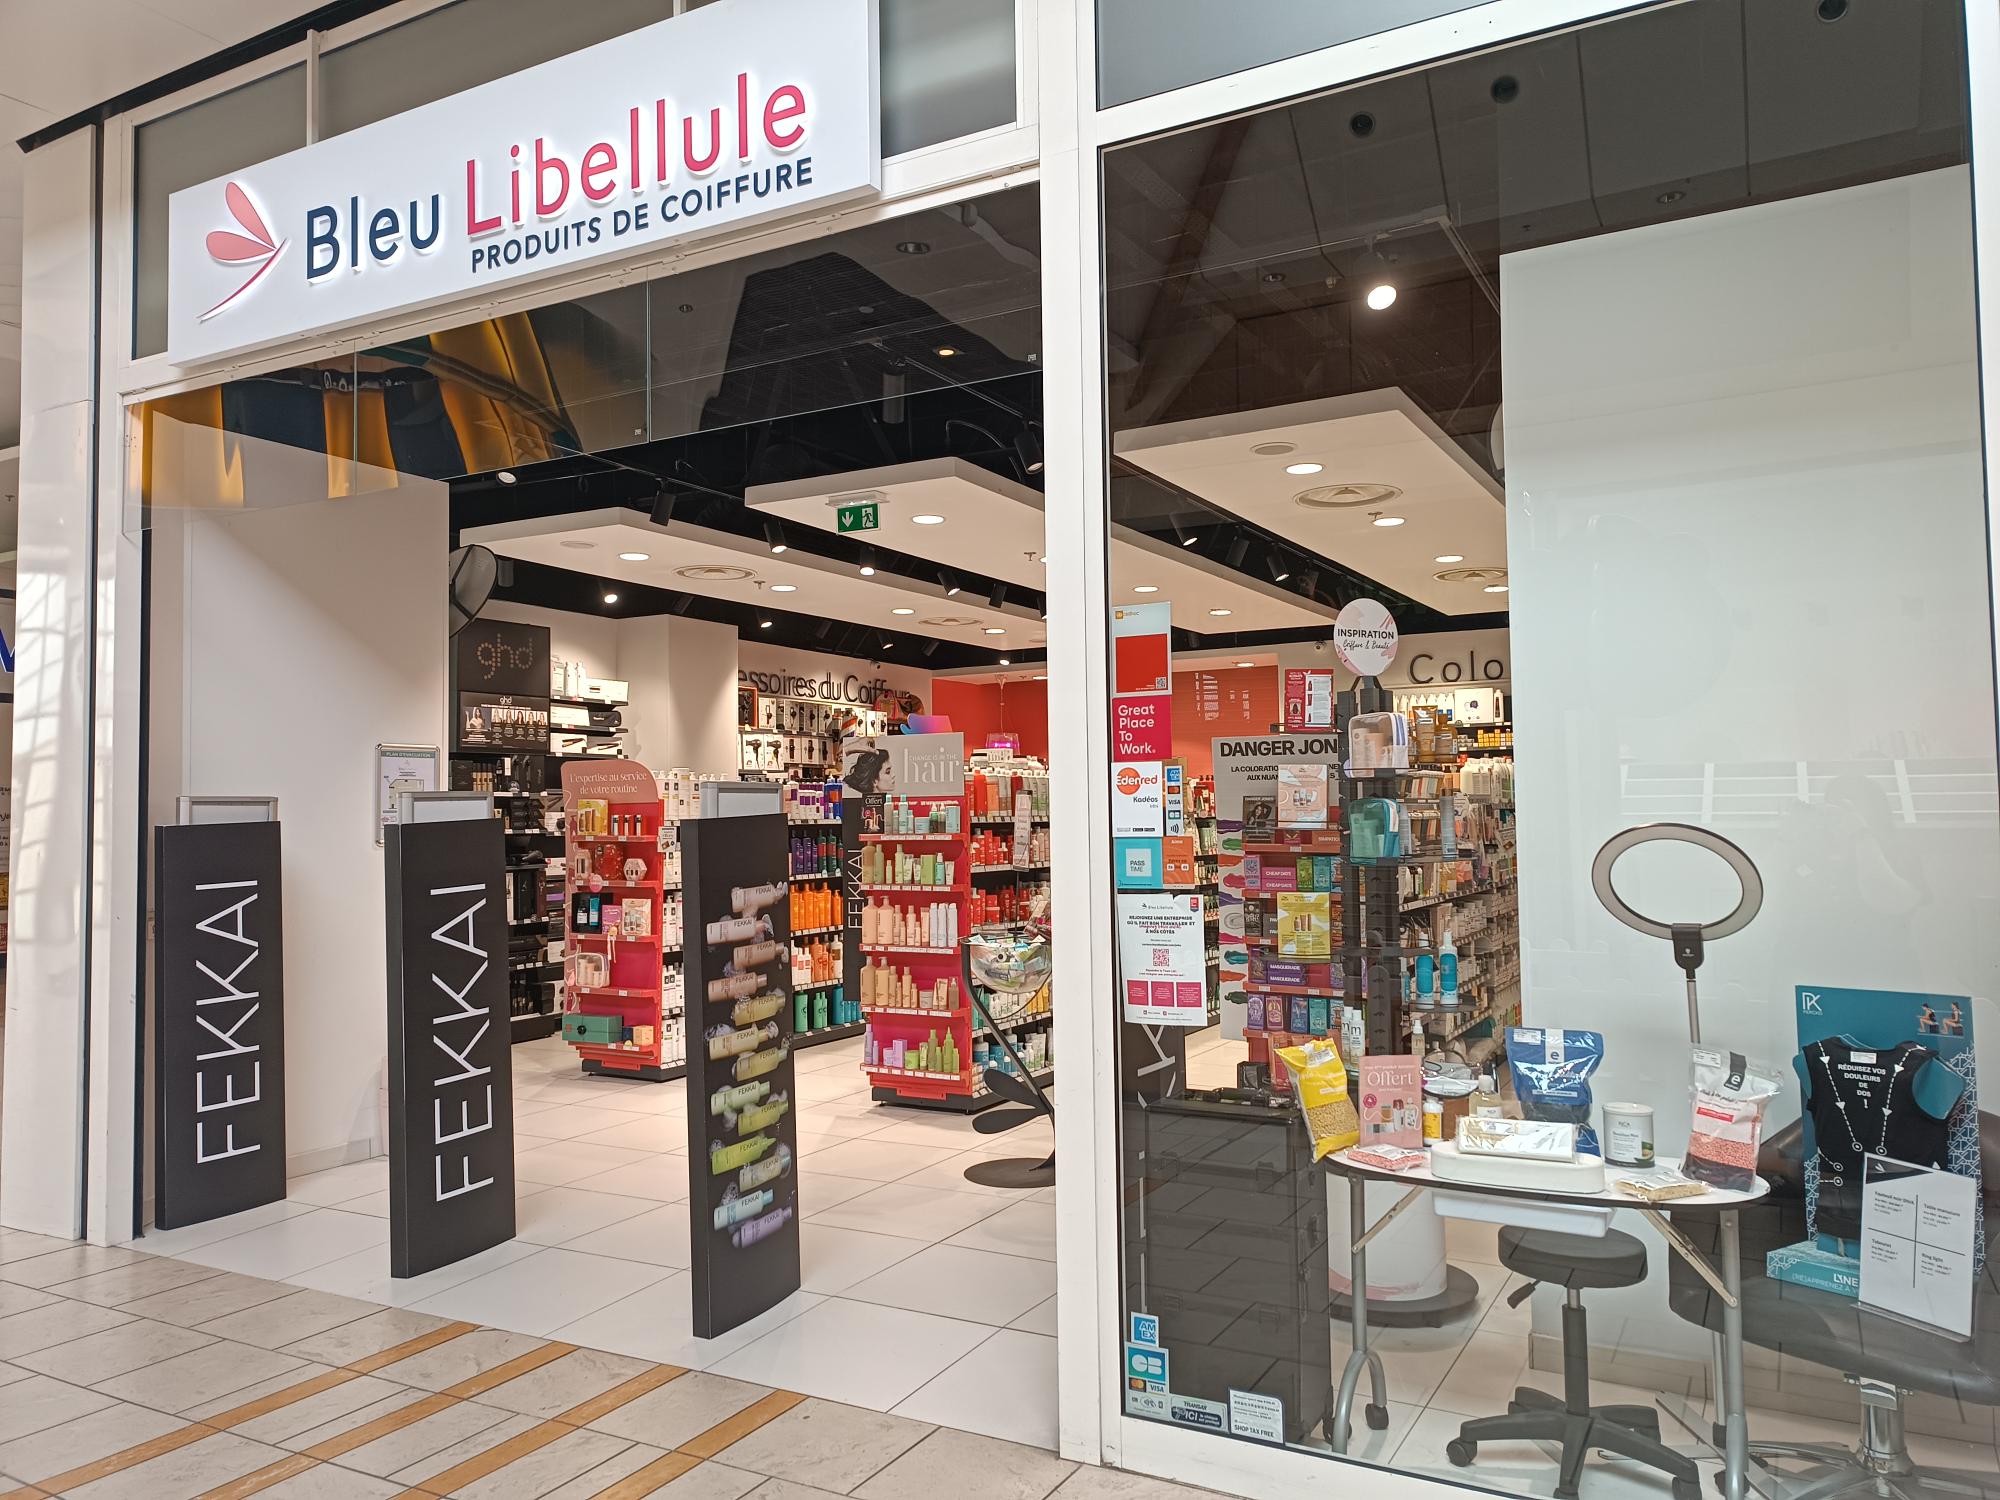 Boutique Bleu Libellule Brétigny-sur-orge